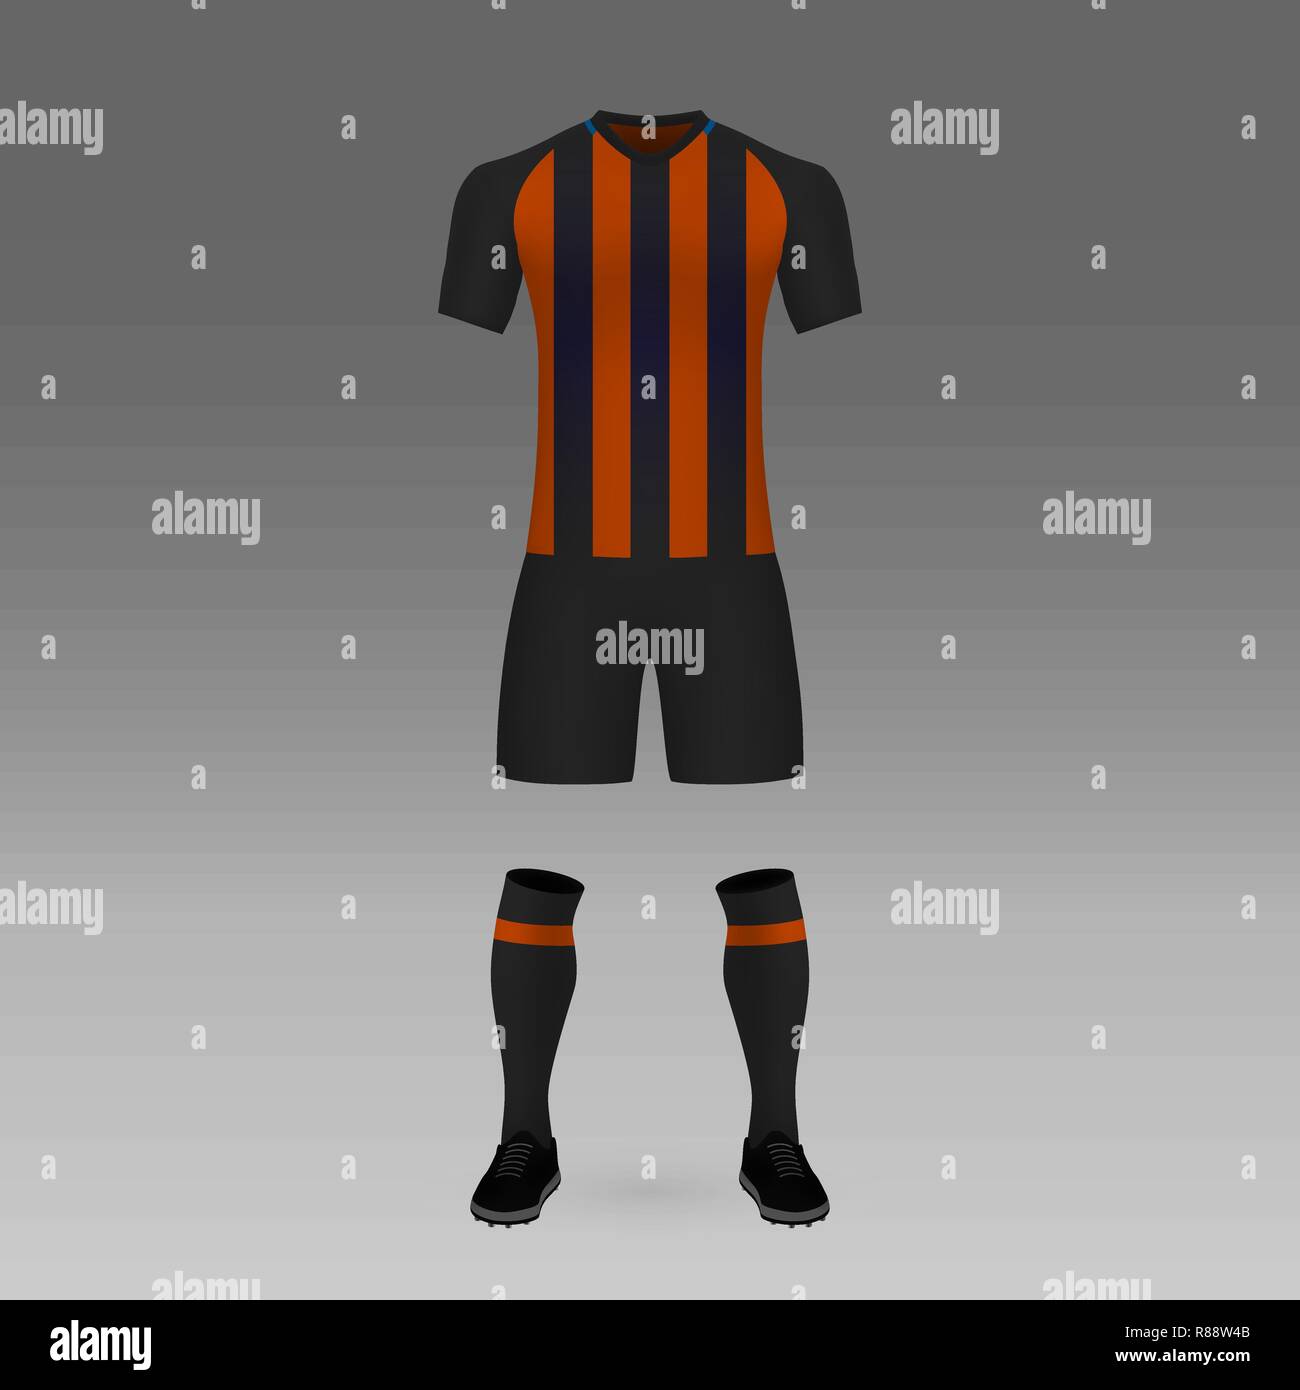 Football Kit Shakhtar Donetsk Shirt Template For Soccer Jersey Vector Illustration Stock Vector Image Art Alamy